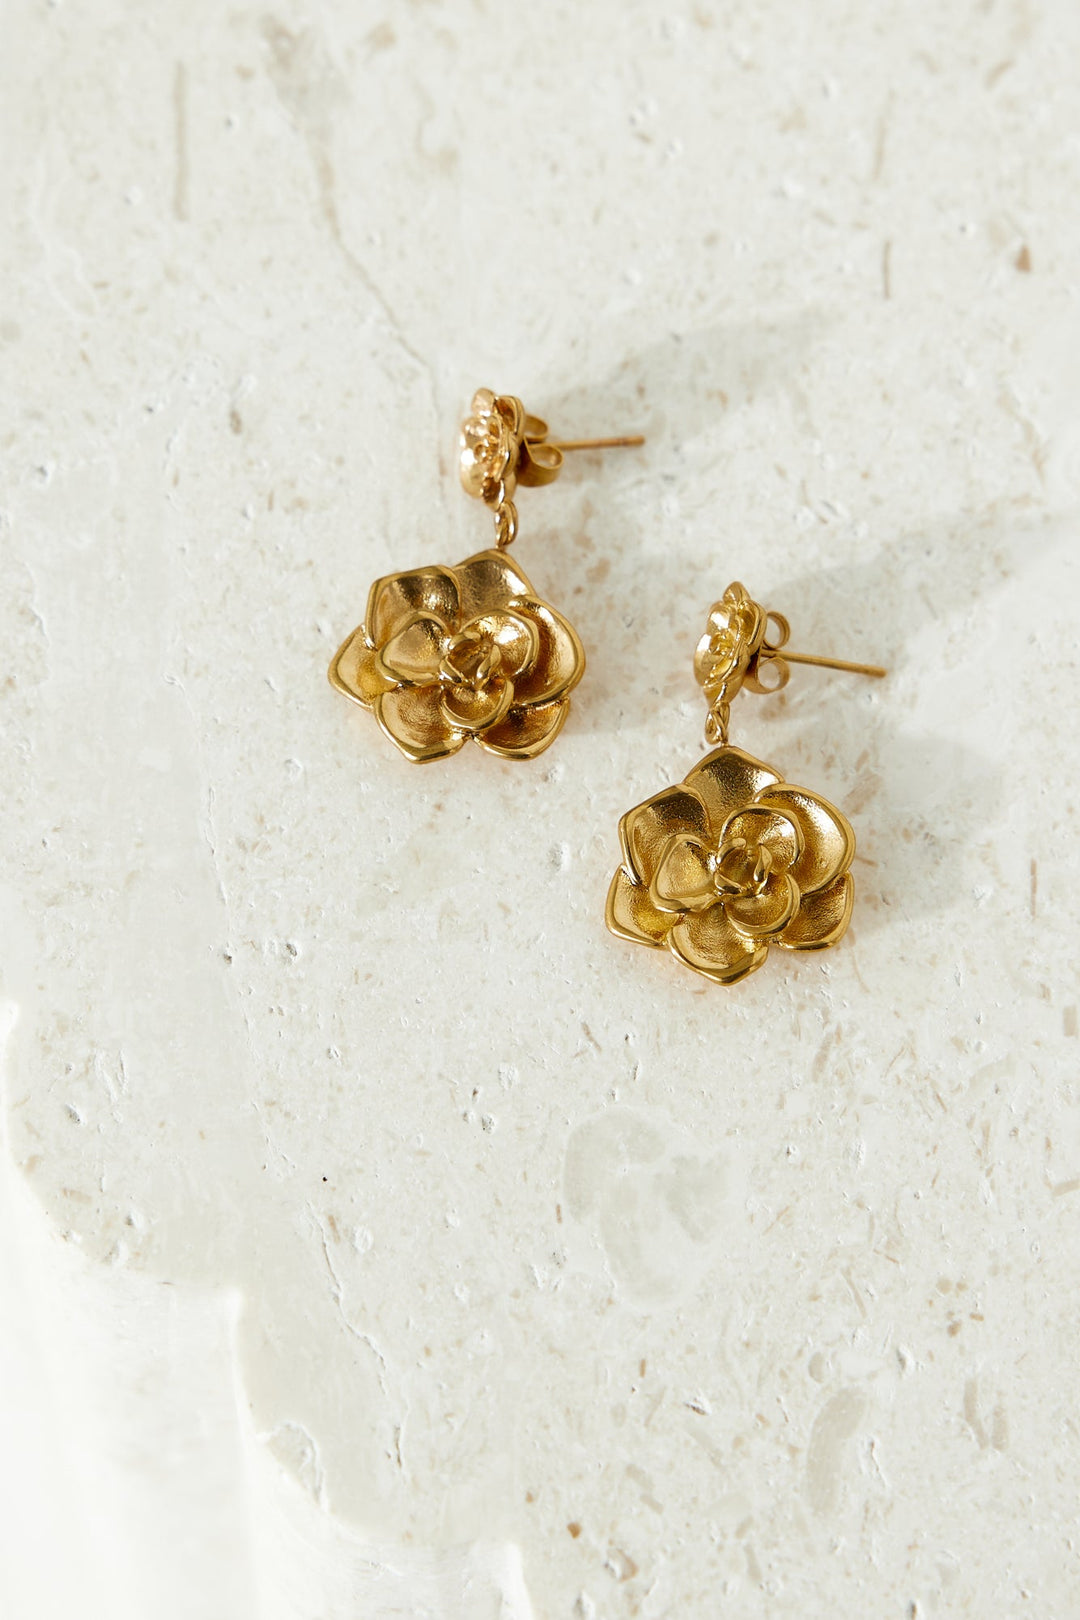 Kolczyki w kształcie pełnych kwiatów, pozłacane 18-karatowym złotem